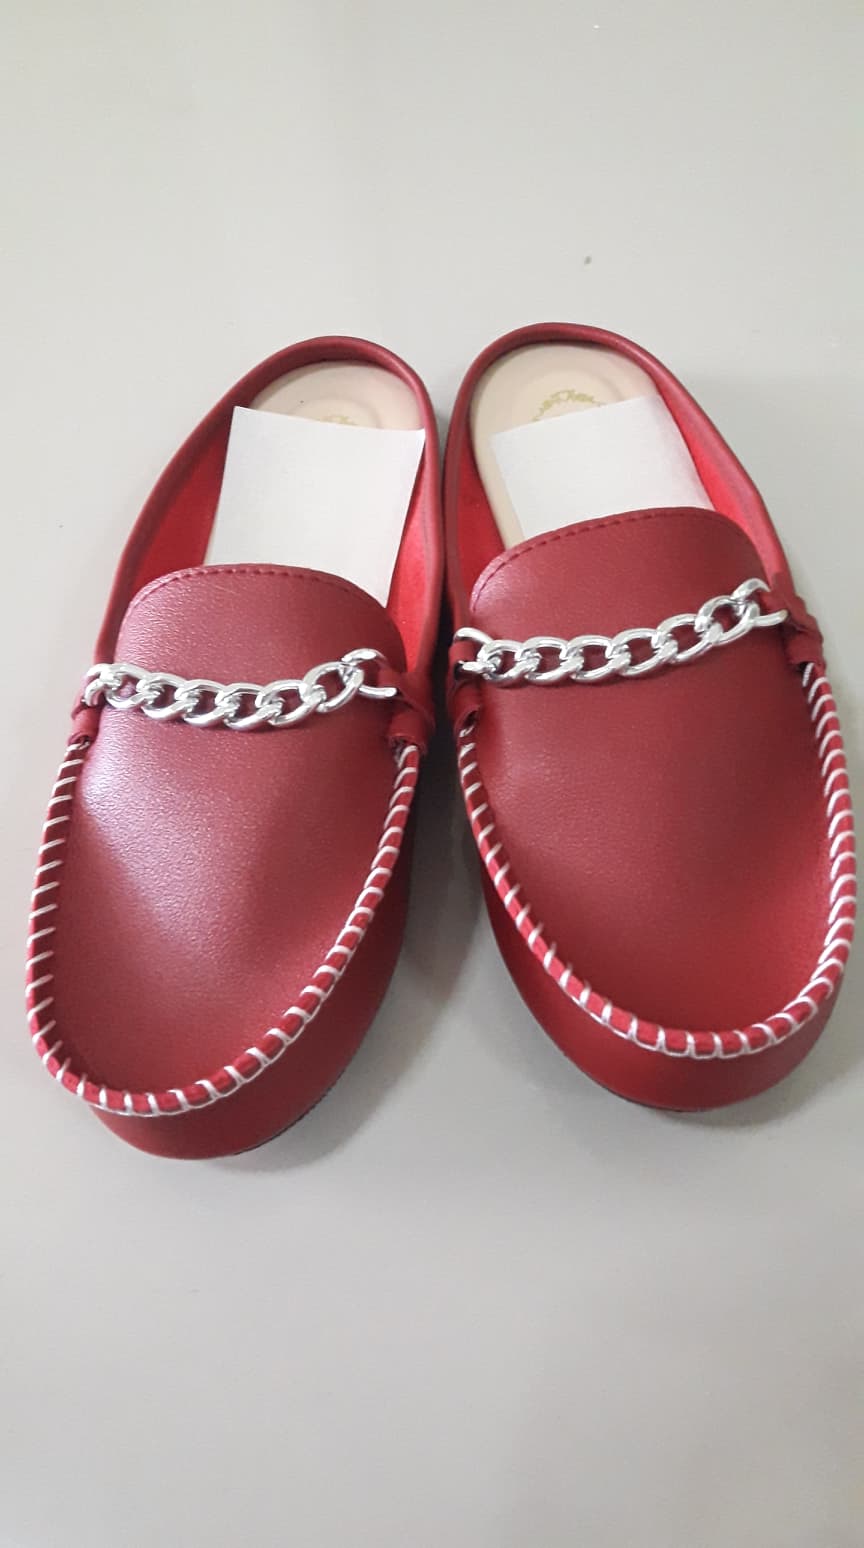 รองเท้าผู้ใหญ่ คัชชูมี2สี สีดำ สีแดง ใส่ทางการได้ (1คู่ 100บาท)